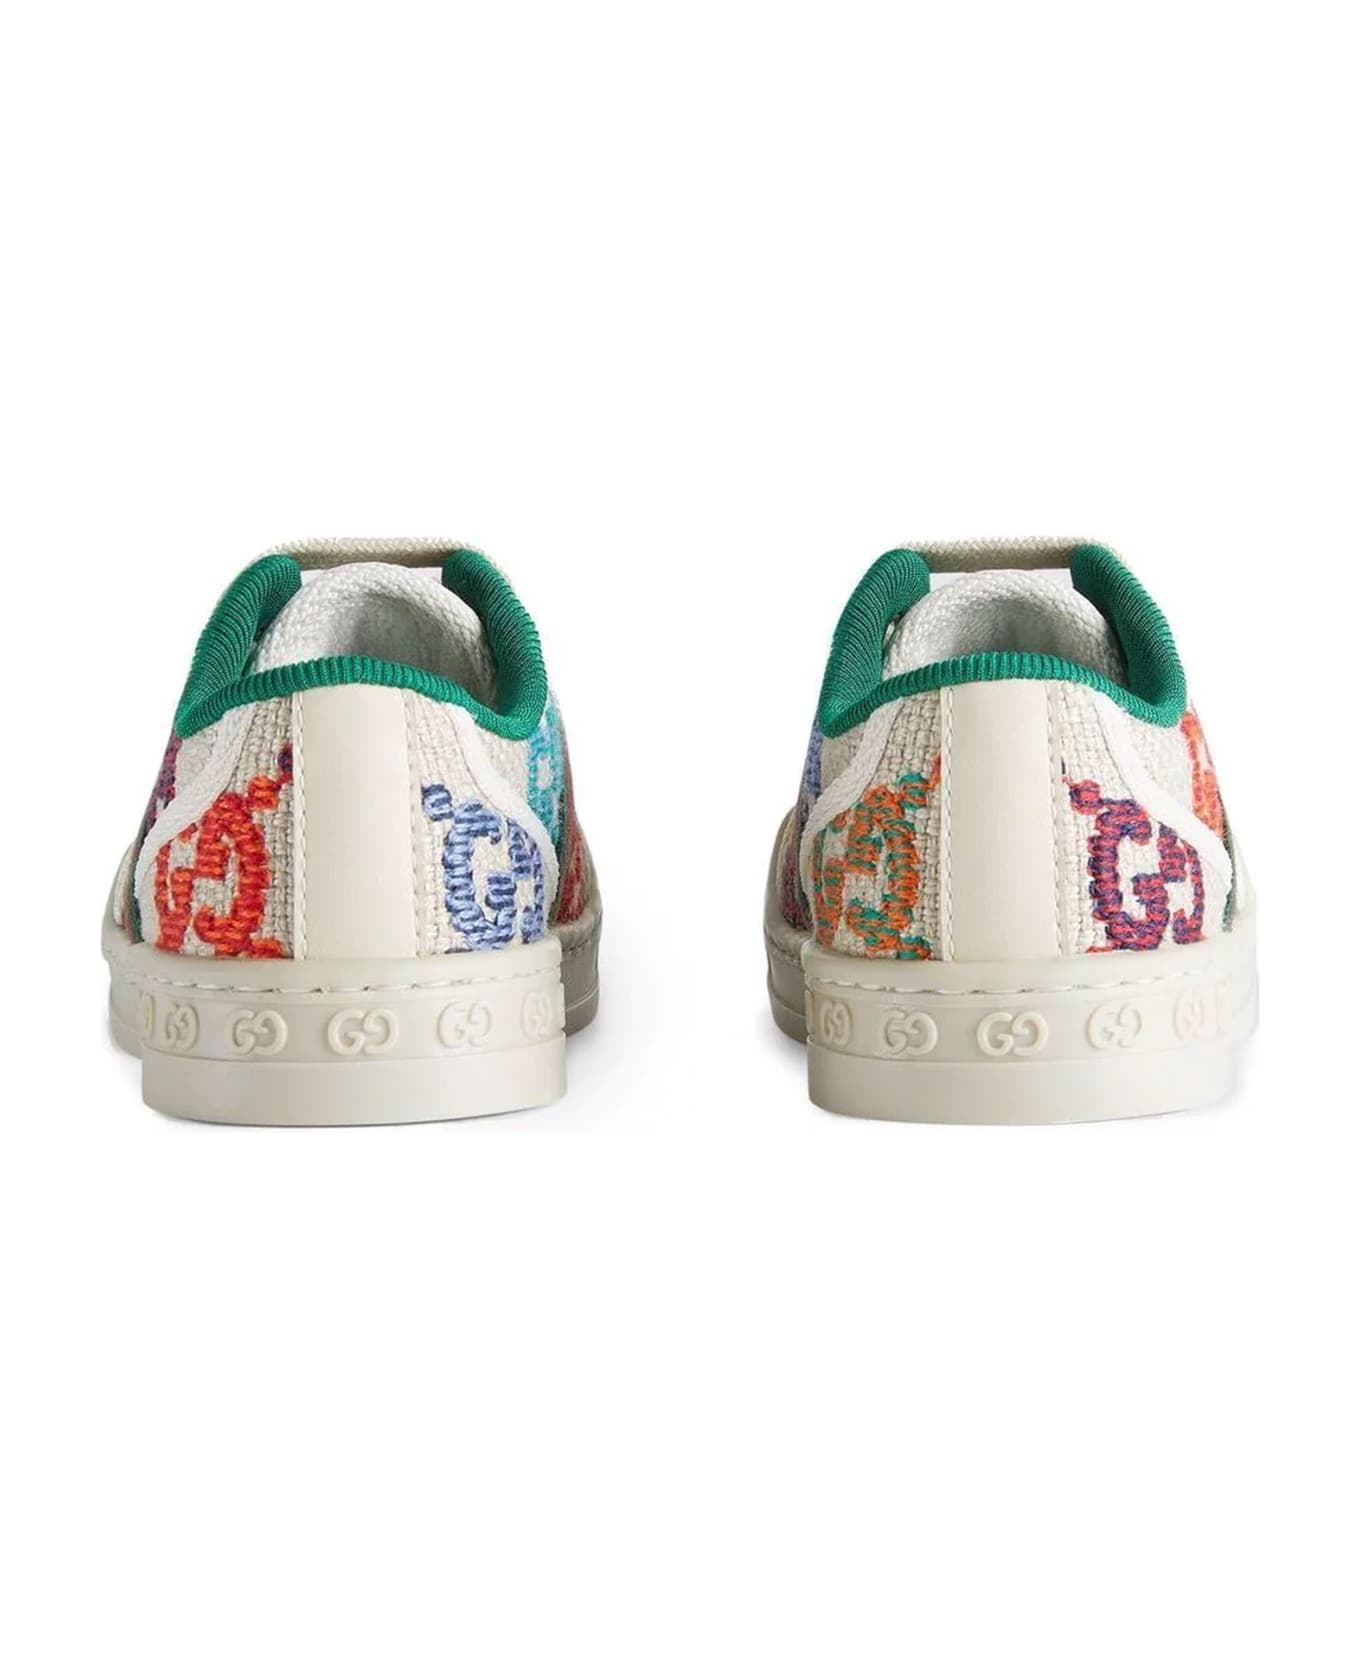 Gucci White Rubber Sneakers - Multicolor